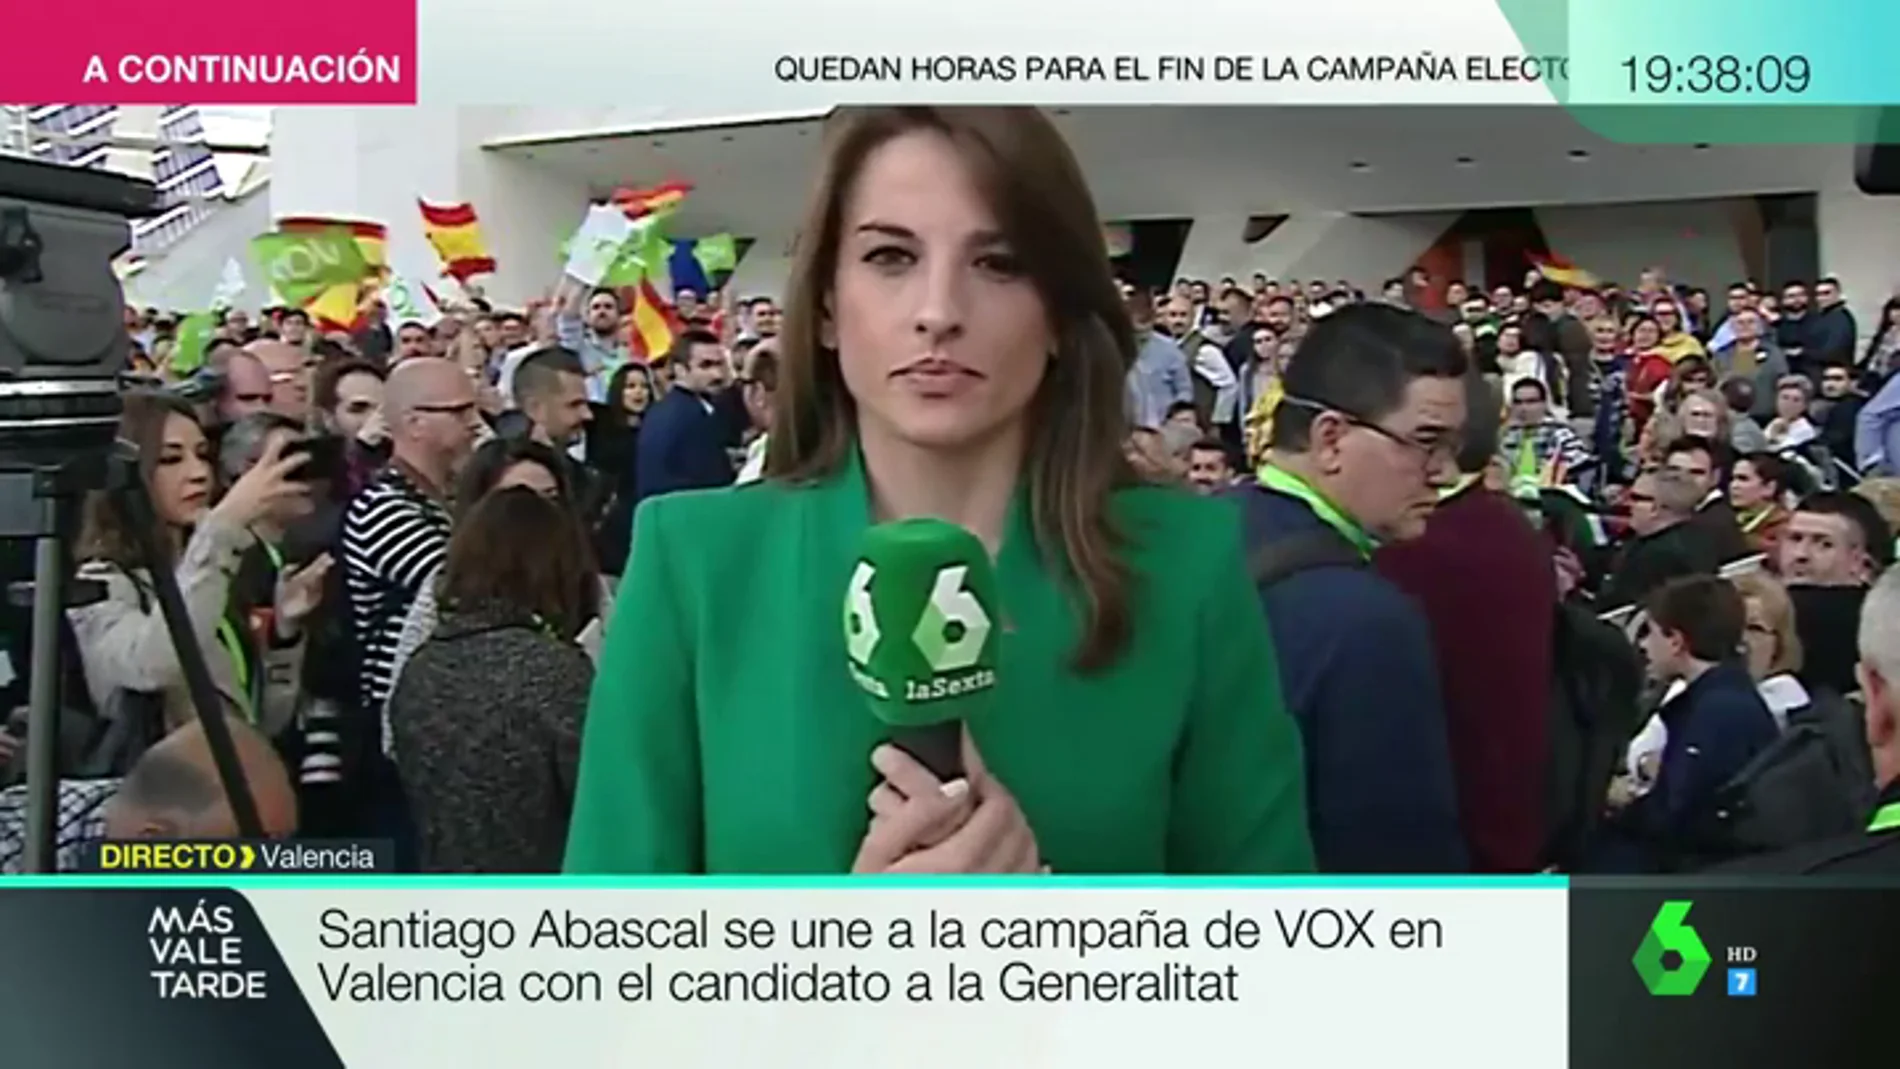 Abucheos y gritos de "fuera, fuera" a una periodista de laSexta durante un acto de Vox en Valencia